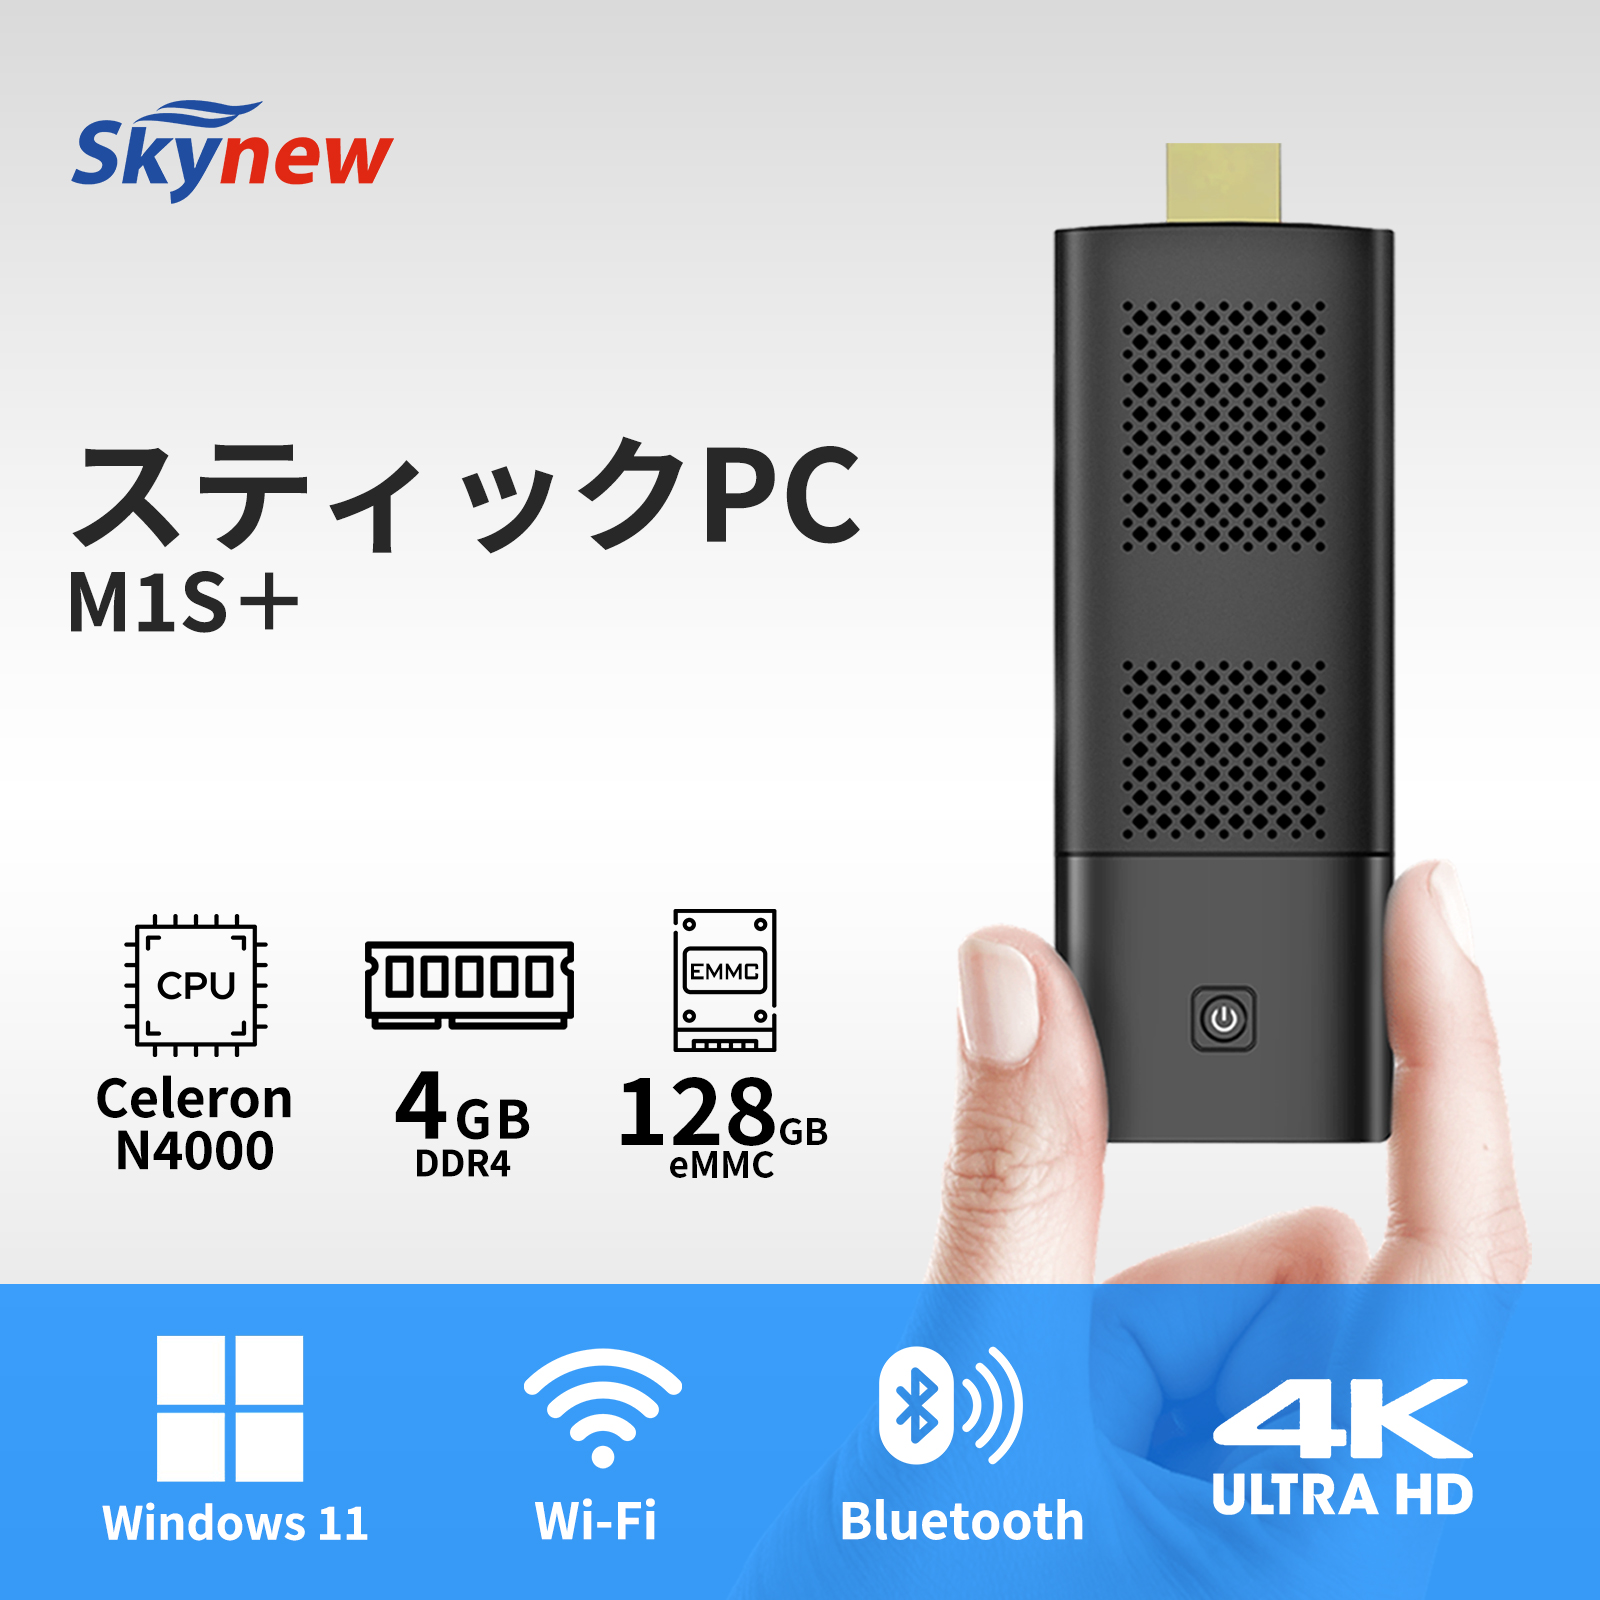 スティックpc ミニpc デスクトップpc 新品 Windows11 4K対応 intel Celeron N4000 メモリ4GB SSD128GB  業務用 省スペース skynew M1S+ 新仕様